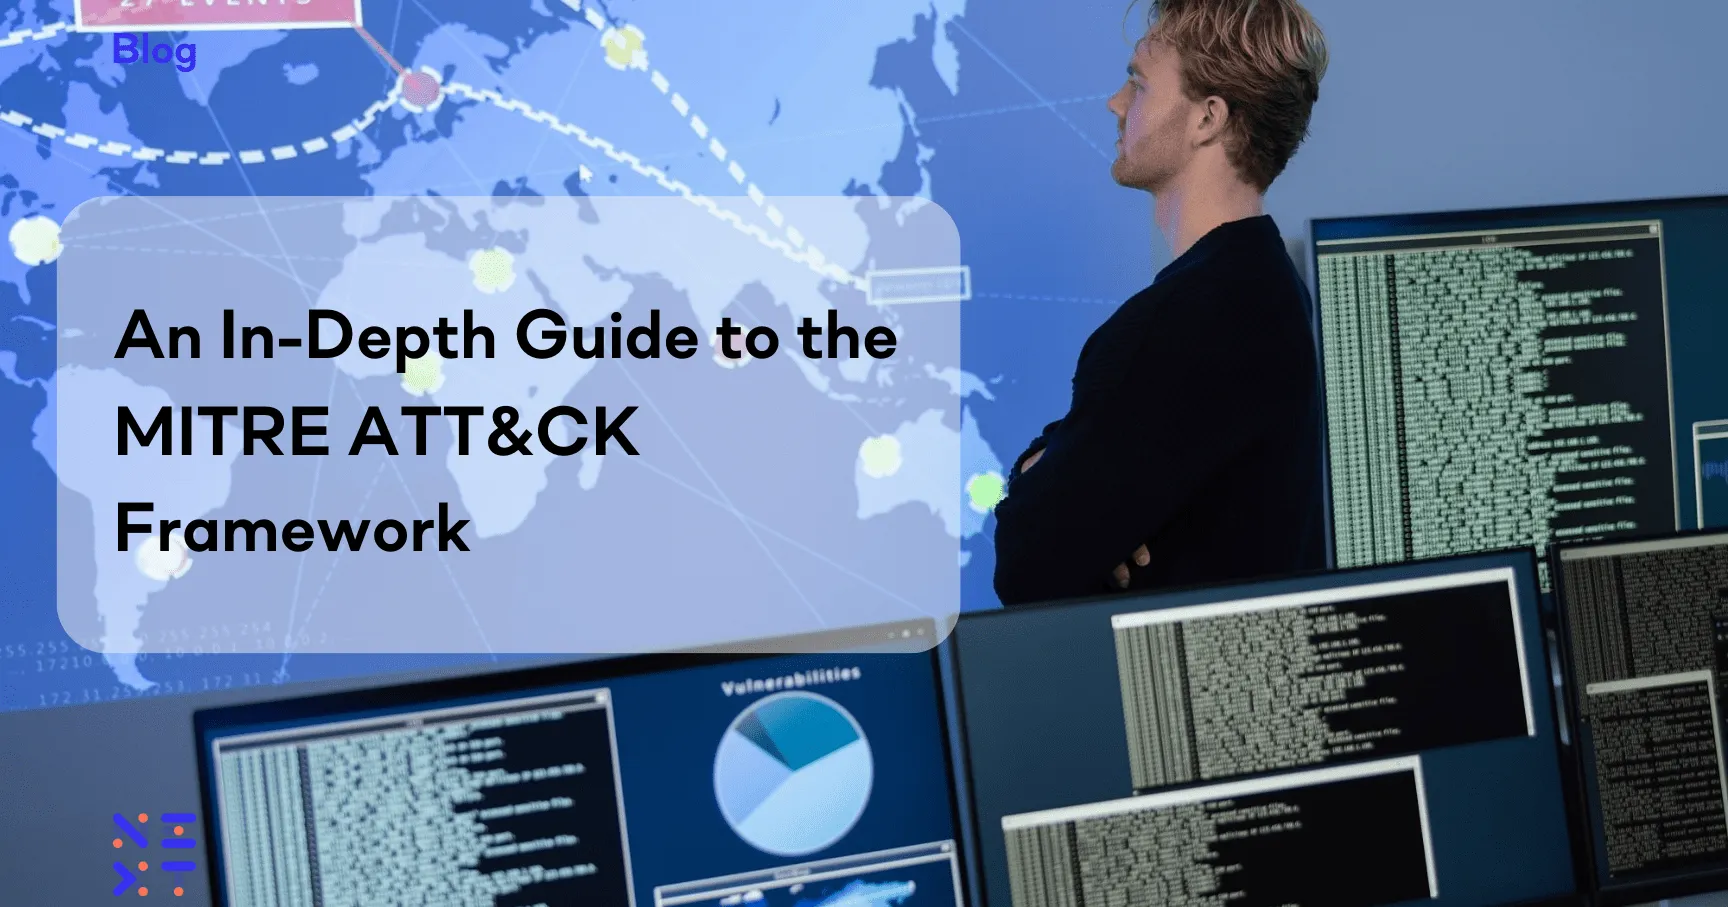 An in-depth guide to the MITRE ATT&CK framework